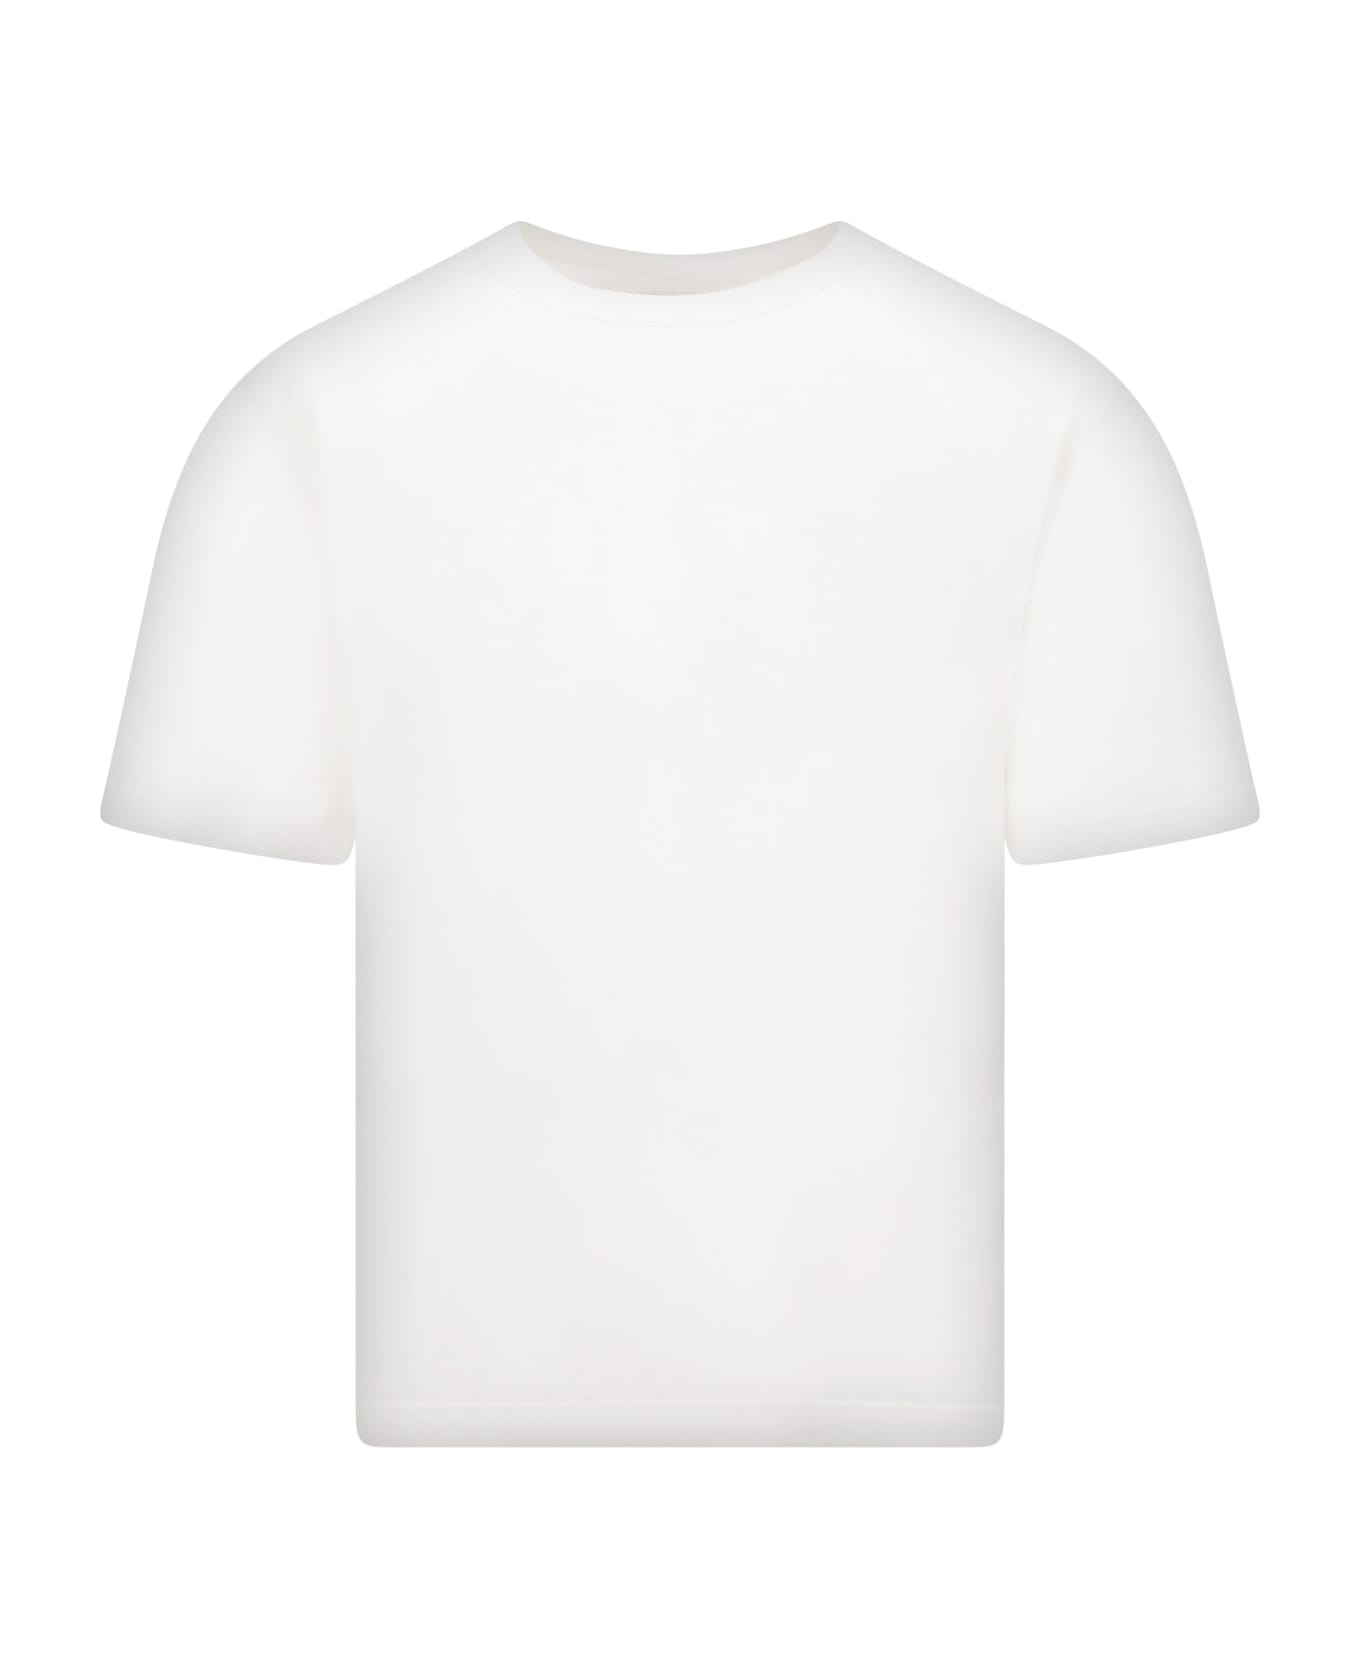 HERON PRESTON T-shirt - White No C シャツ